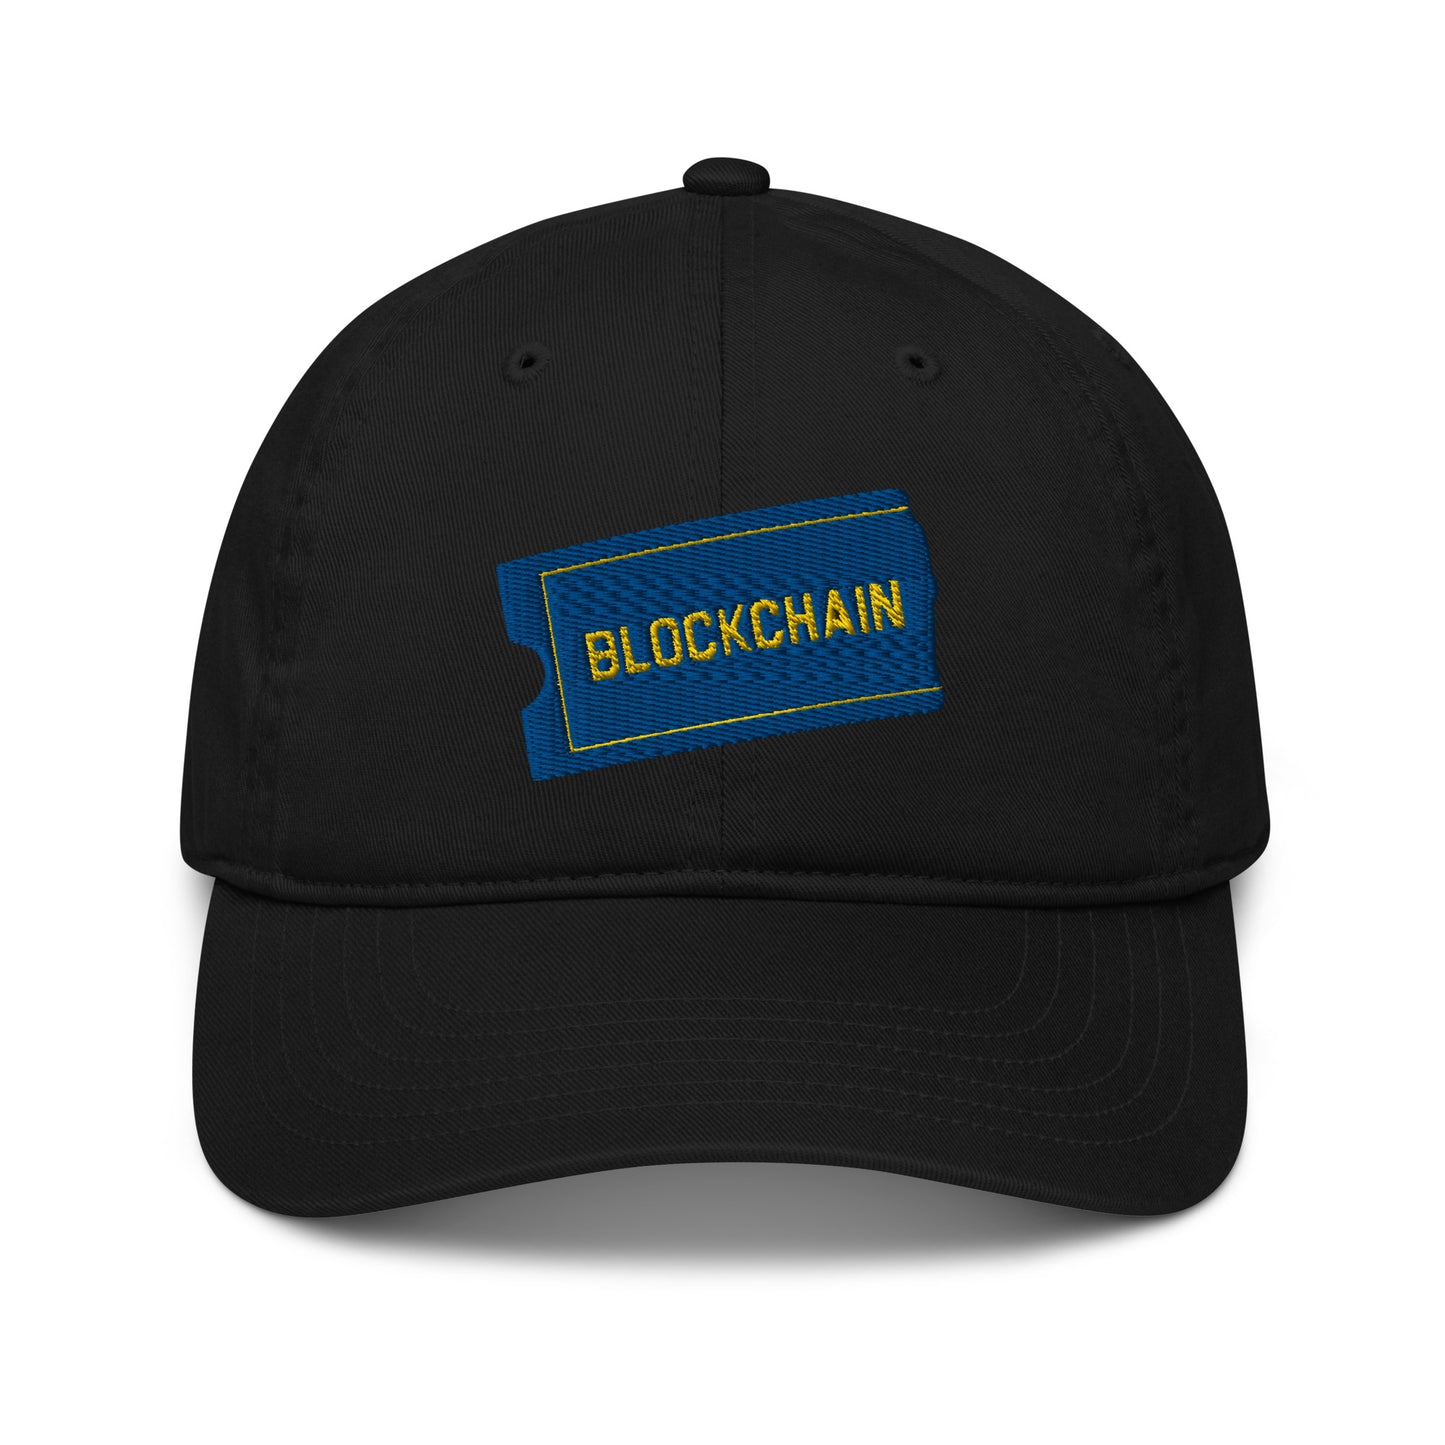 Blockchain OG hat